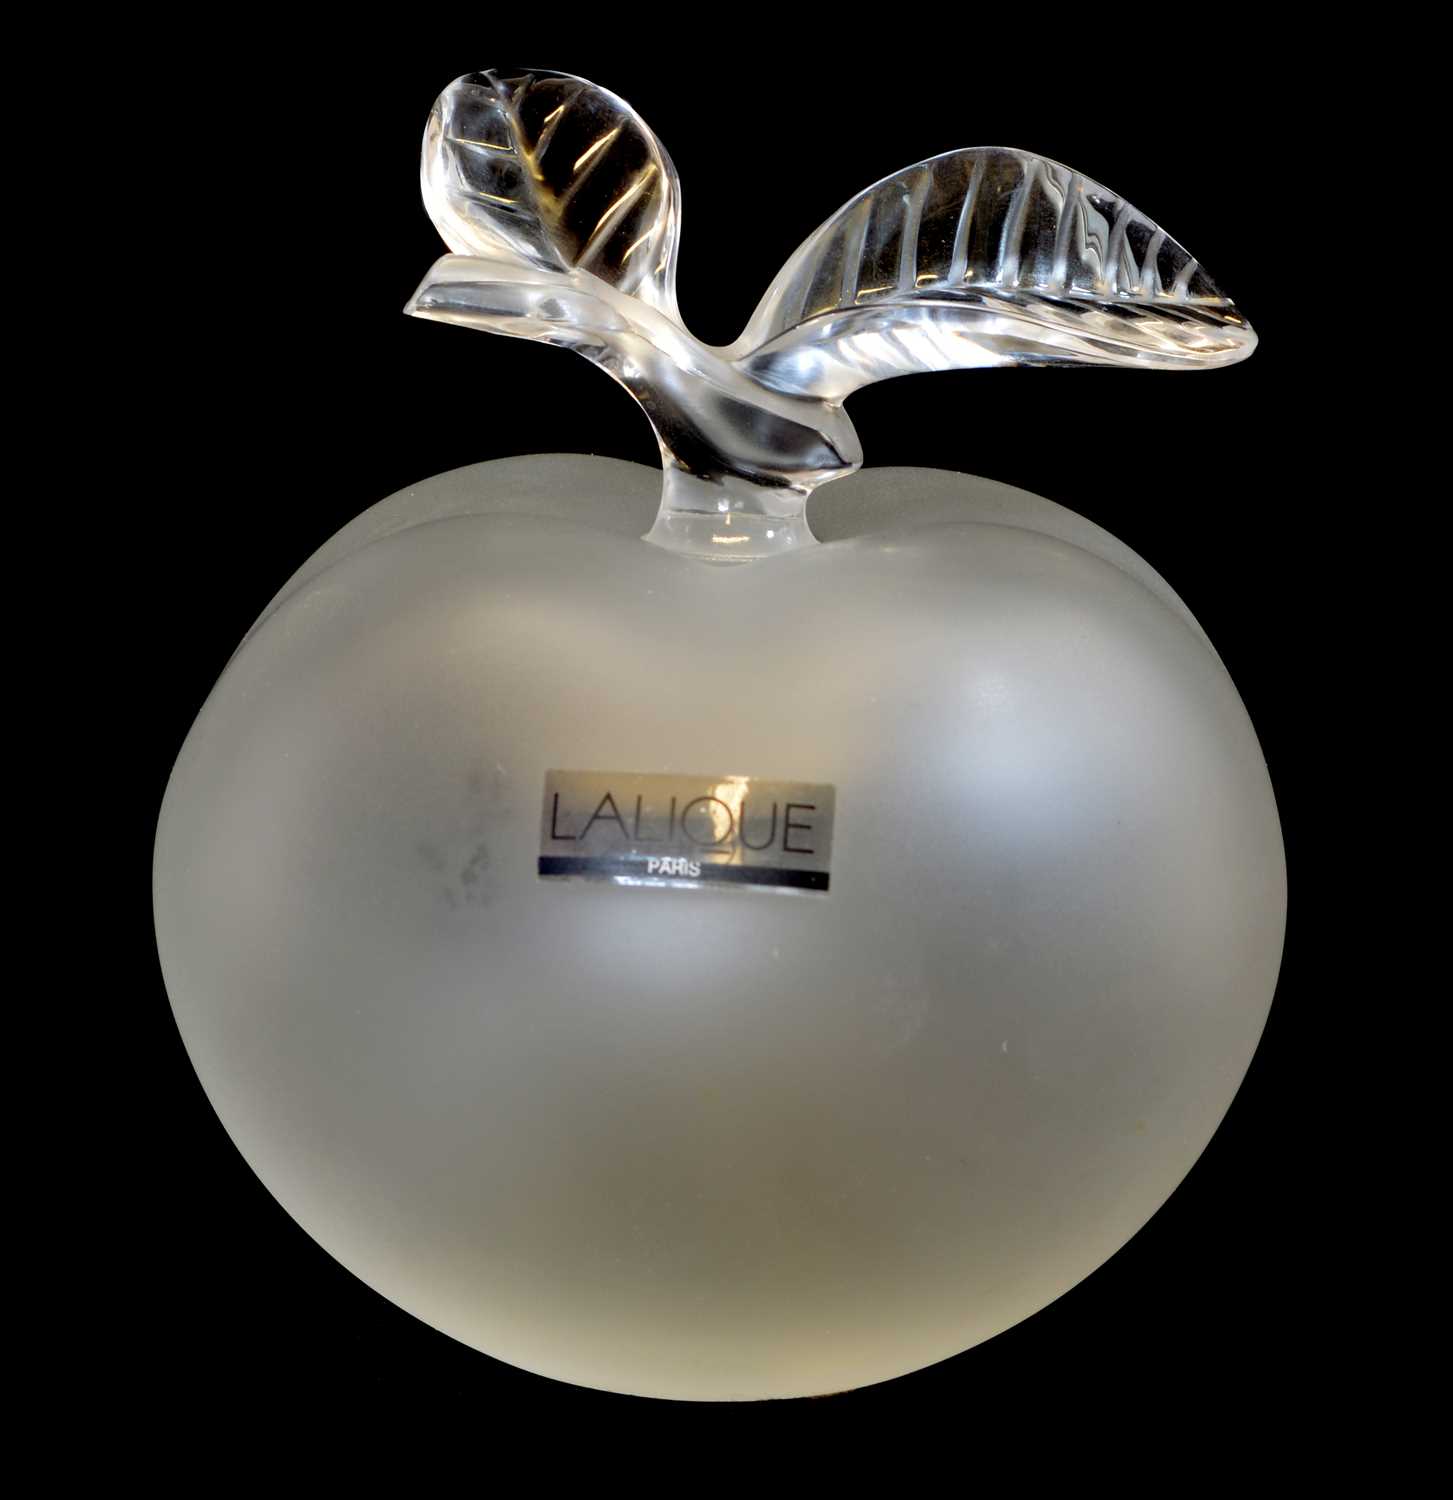 Lot 65 - Lalique Grande Pomme perfume Bottle